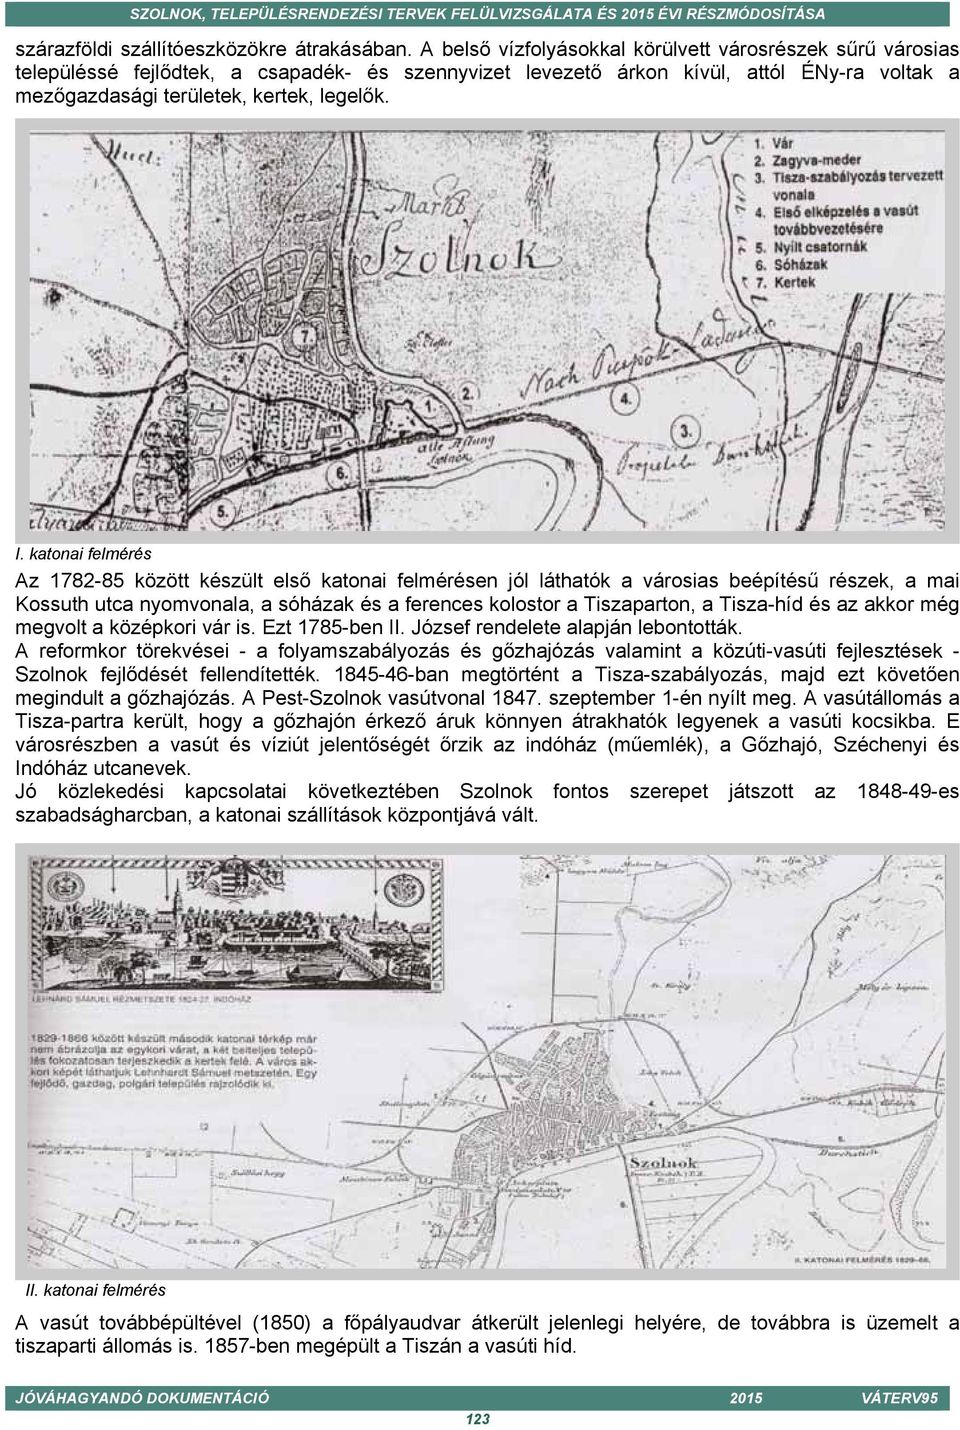 katonai felmérés Az 1782-85 között készült első katonai felmérésen jól láthatók a városias beépítésű részek, a mai Kossuth utca nyomvonala, a sóházak és a ferences kolostor a Tiszaparton, a Tisza-híd